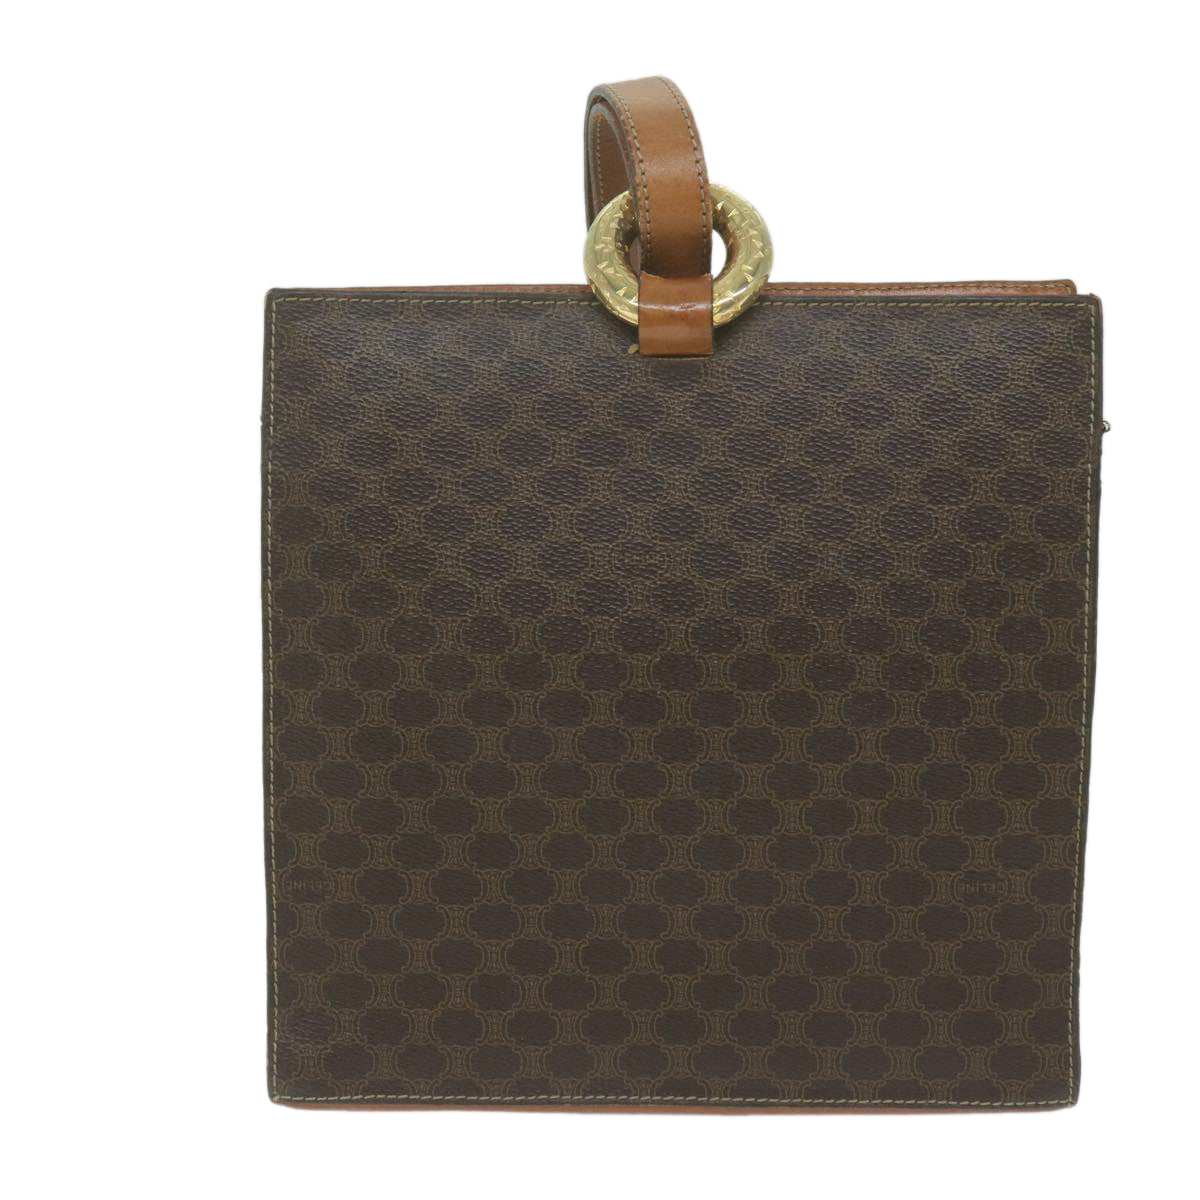 CELINE Macadam Canvas Shoulder Bag PVC Leather Brown Auth 65644